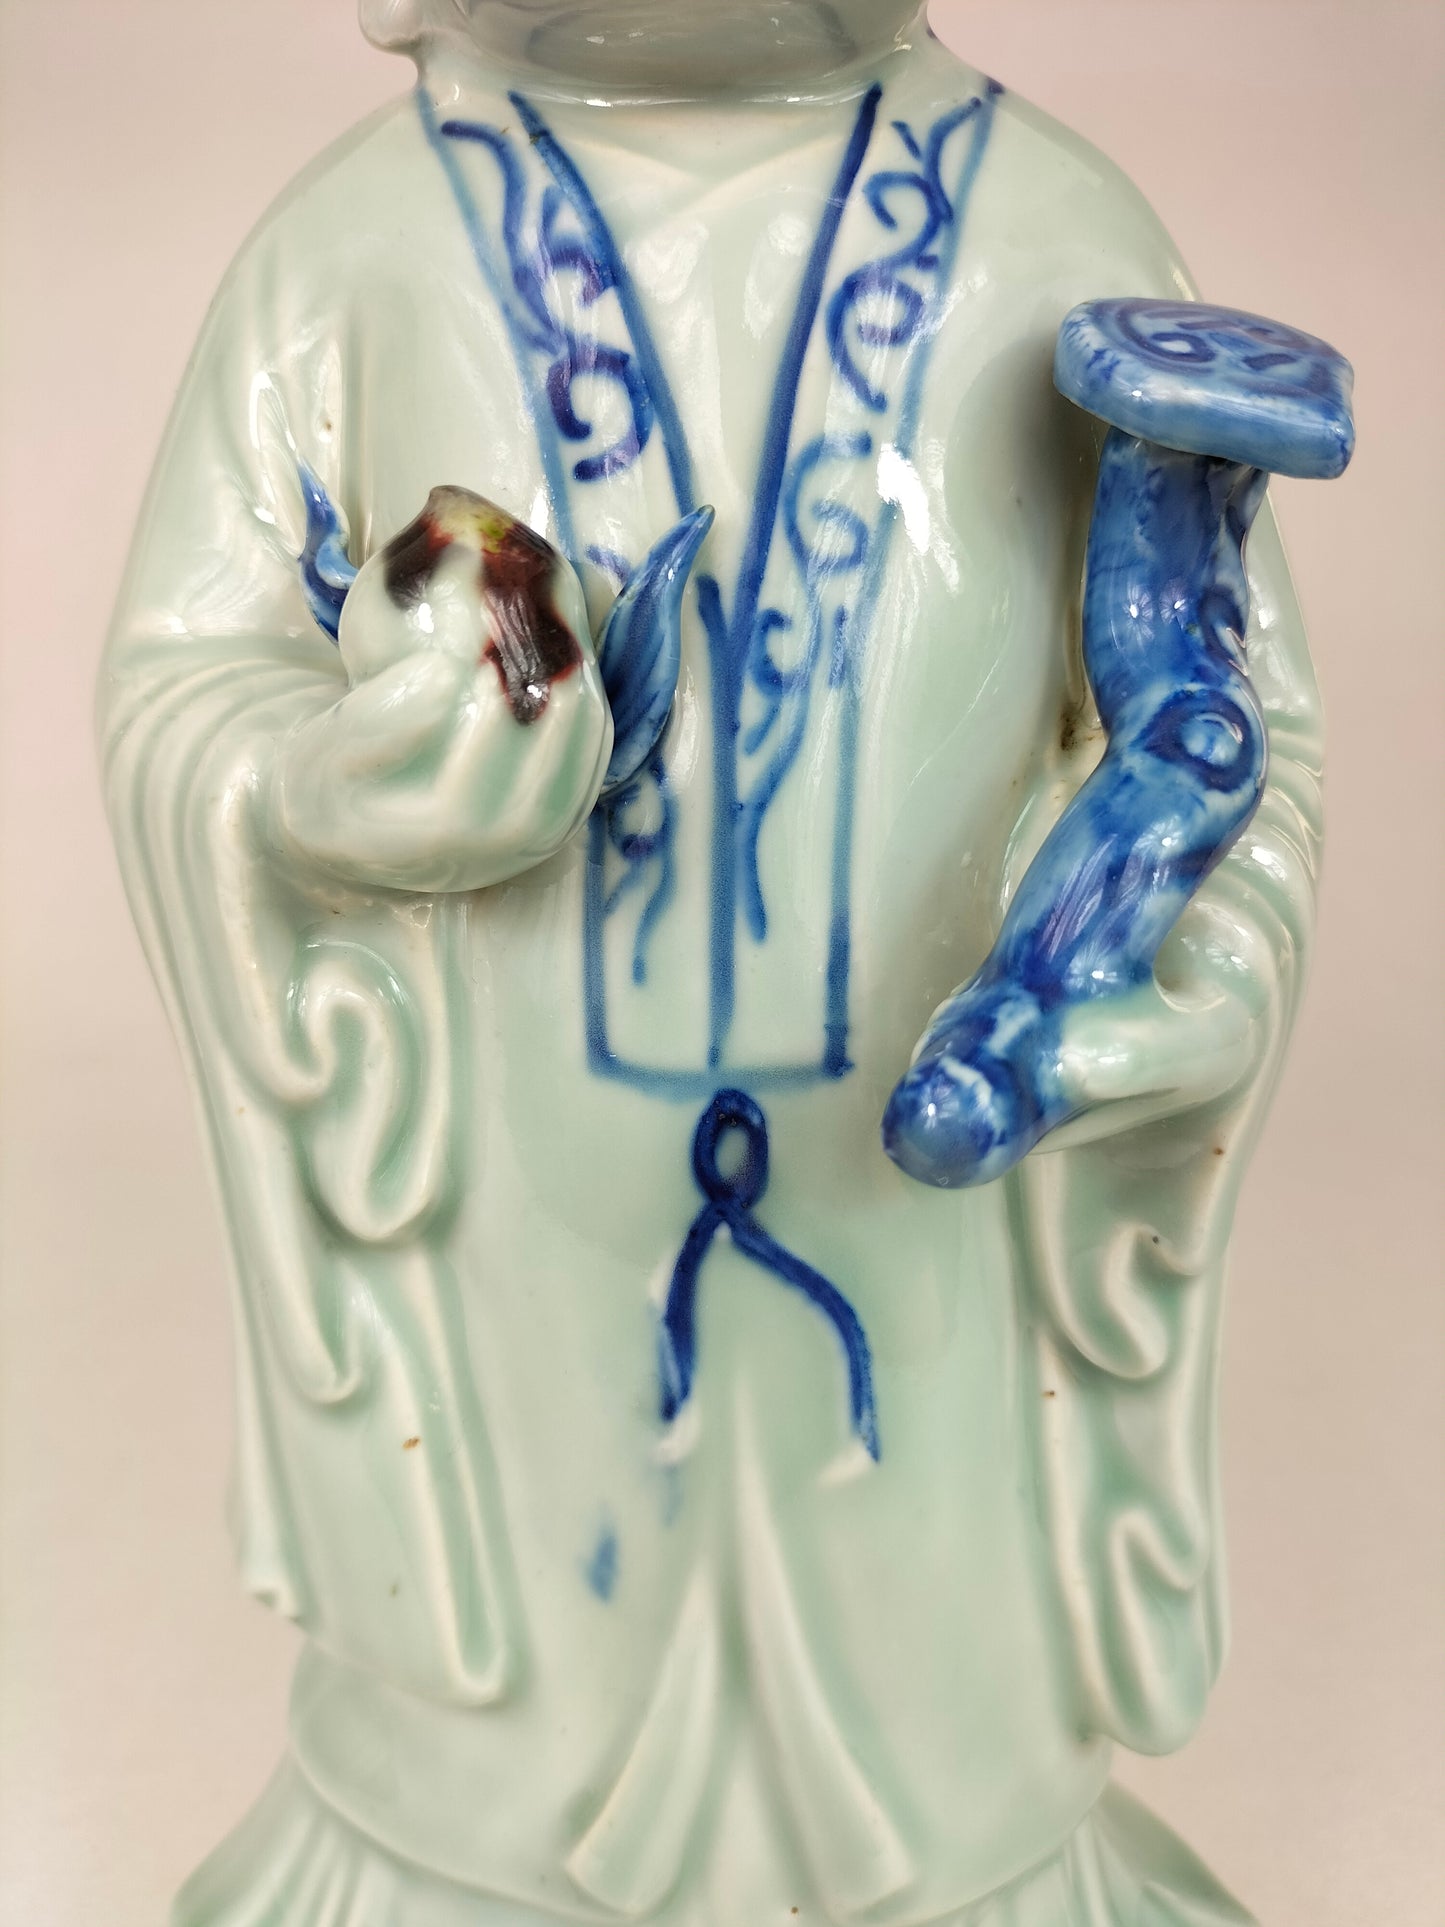 Patung Cina Shou Lao // Dewa nasib dan kekayaan - abad ke-20